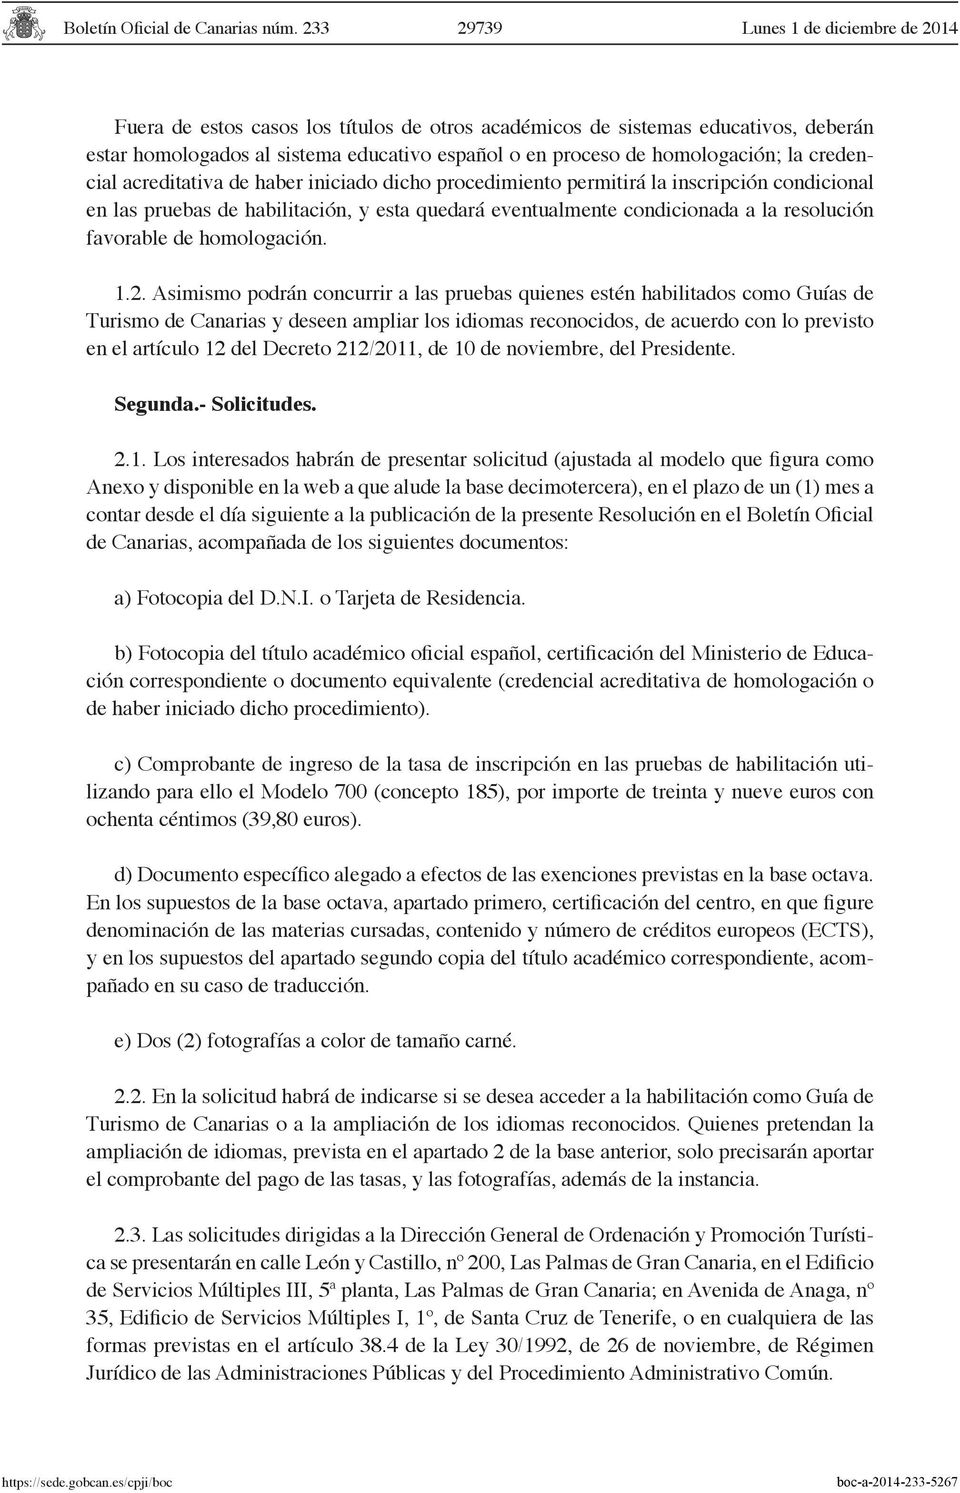 Asimismo podrán concurrir a las pruebas quienes estén habilitados como Guías de Turismo de Canarias y deseen ampliar los idiomas reconocidos, de acuerdo con lo previsto en el artículo 12 del Decreto